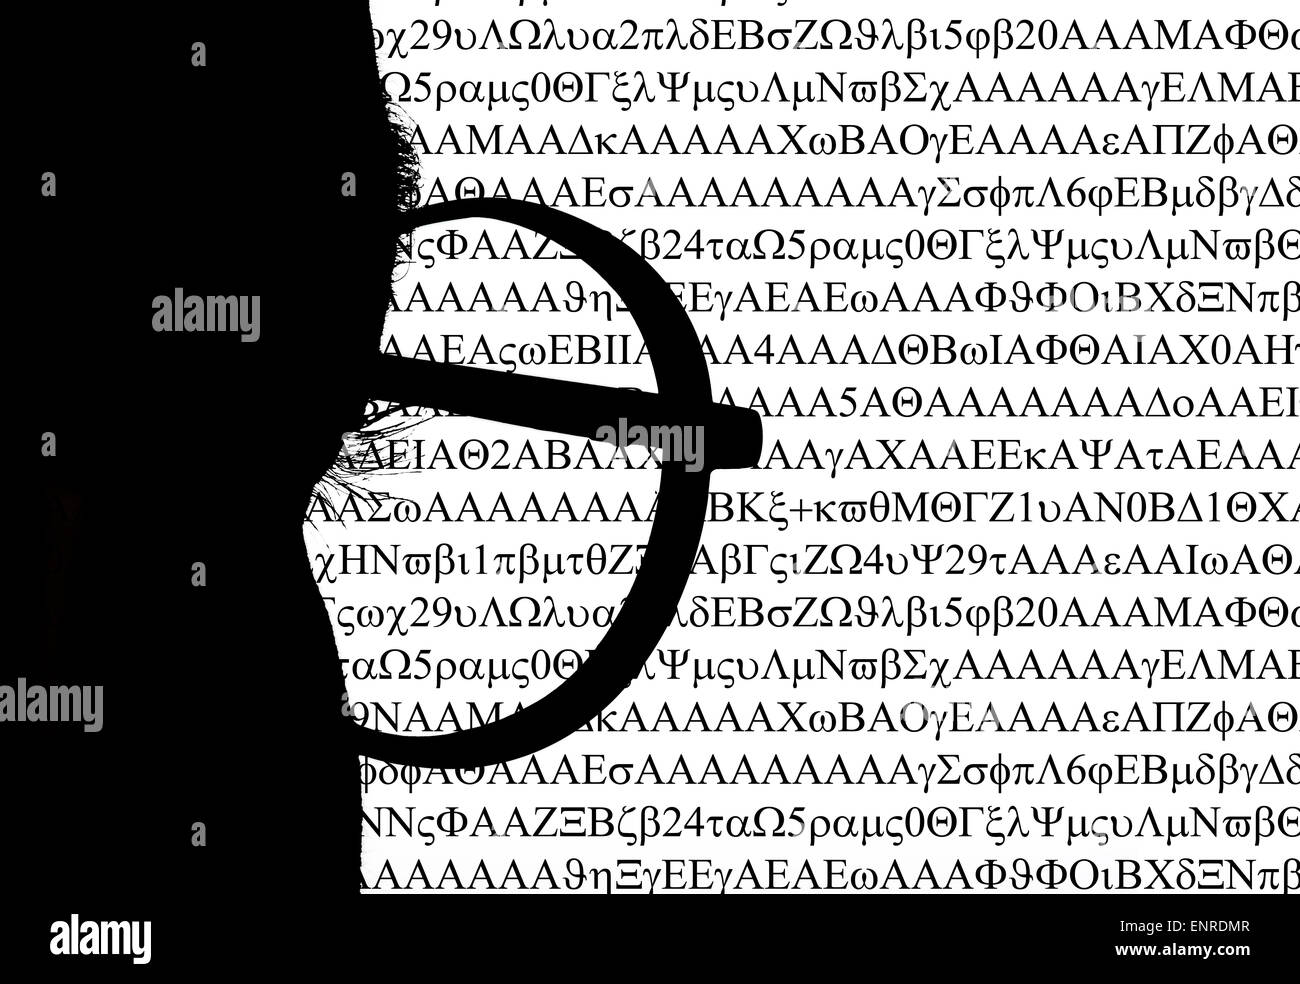 Libre d'silhouette d'un homme lisant hacker code sur ordinateur moniteur conceptual Banque D'Images